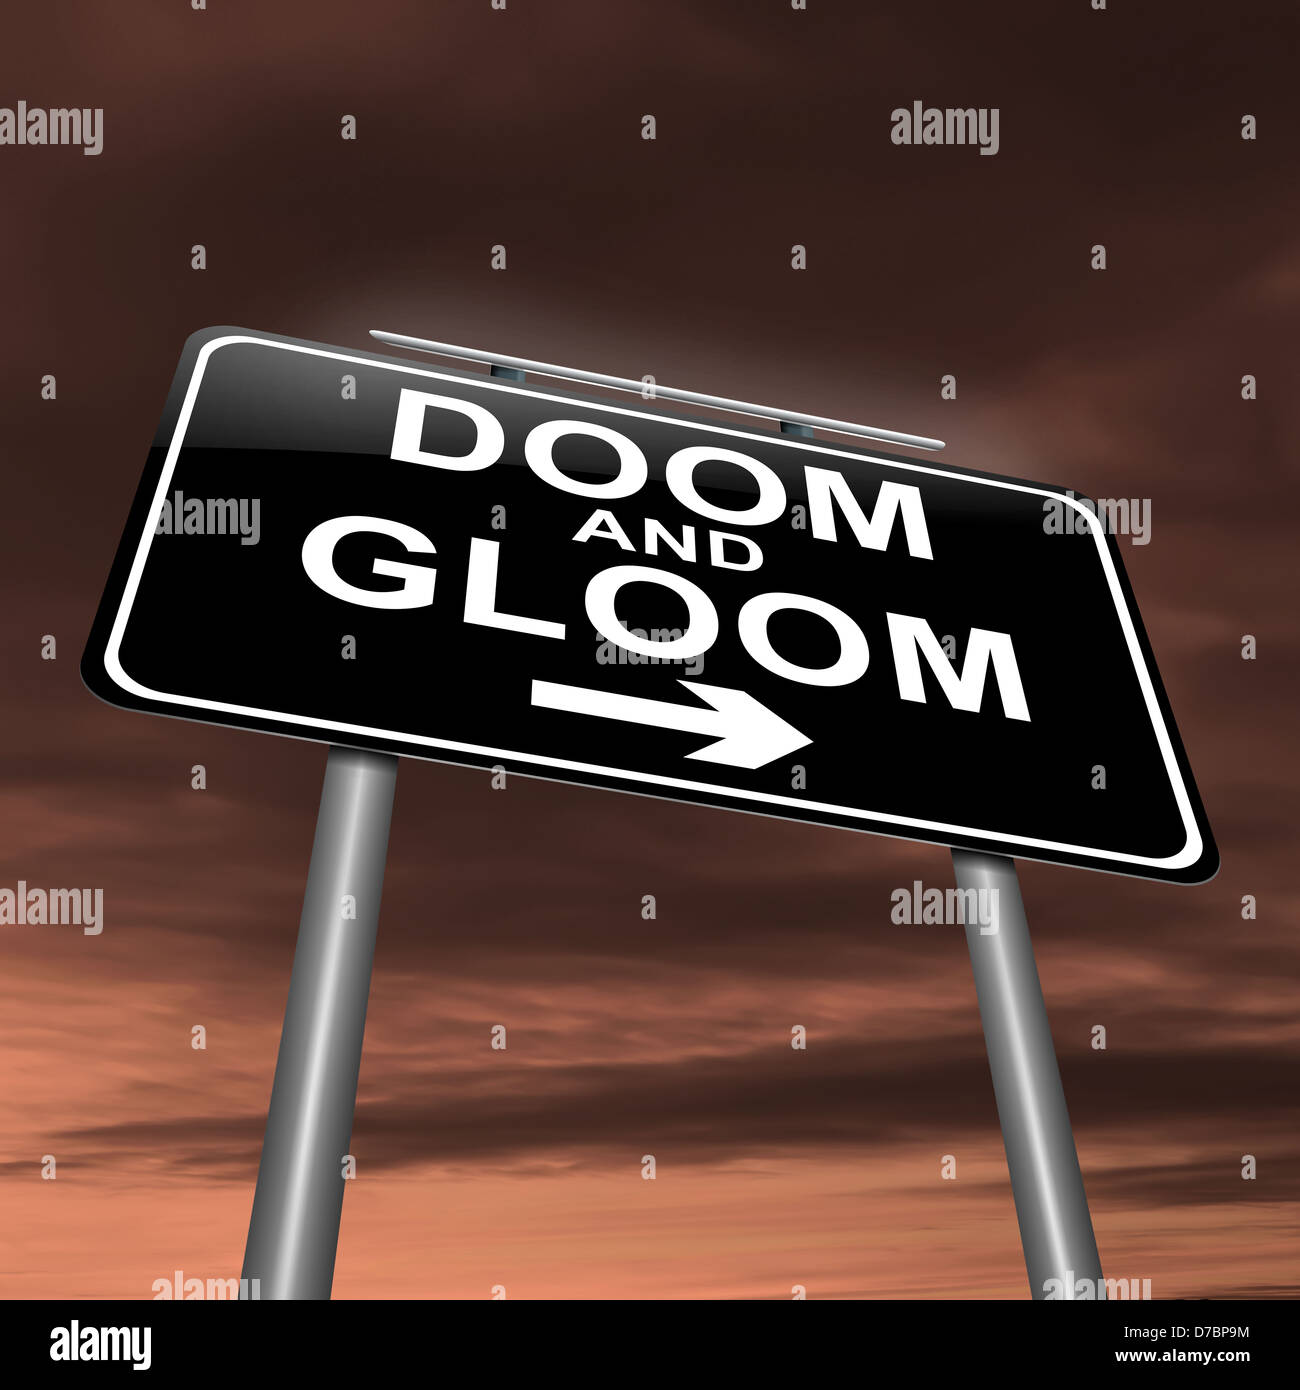 All doom, no gloom